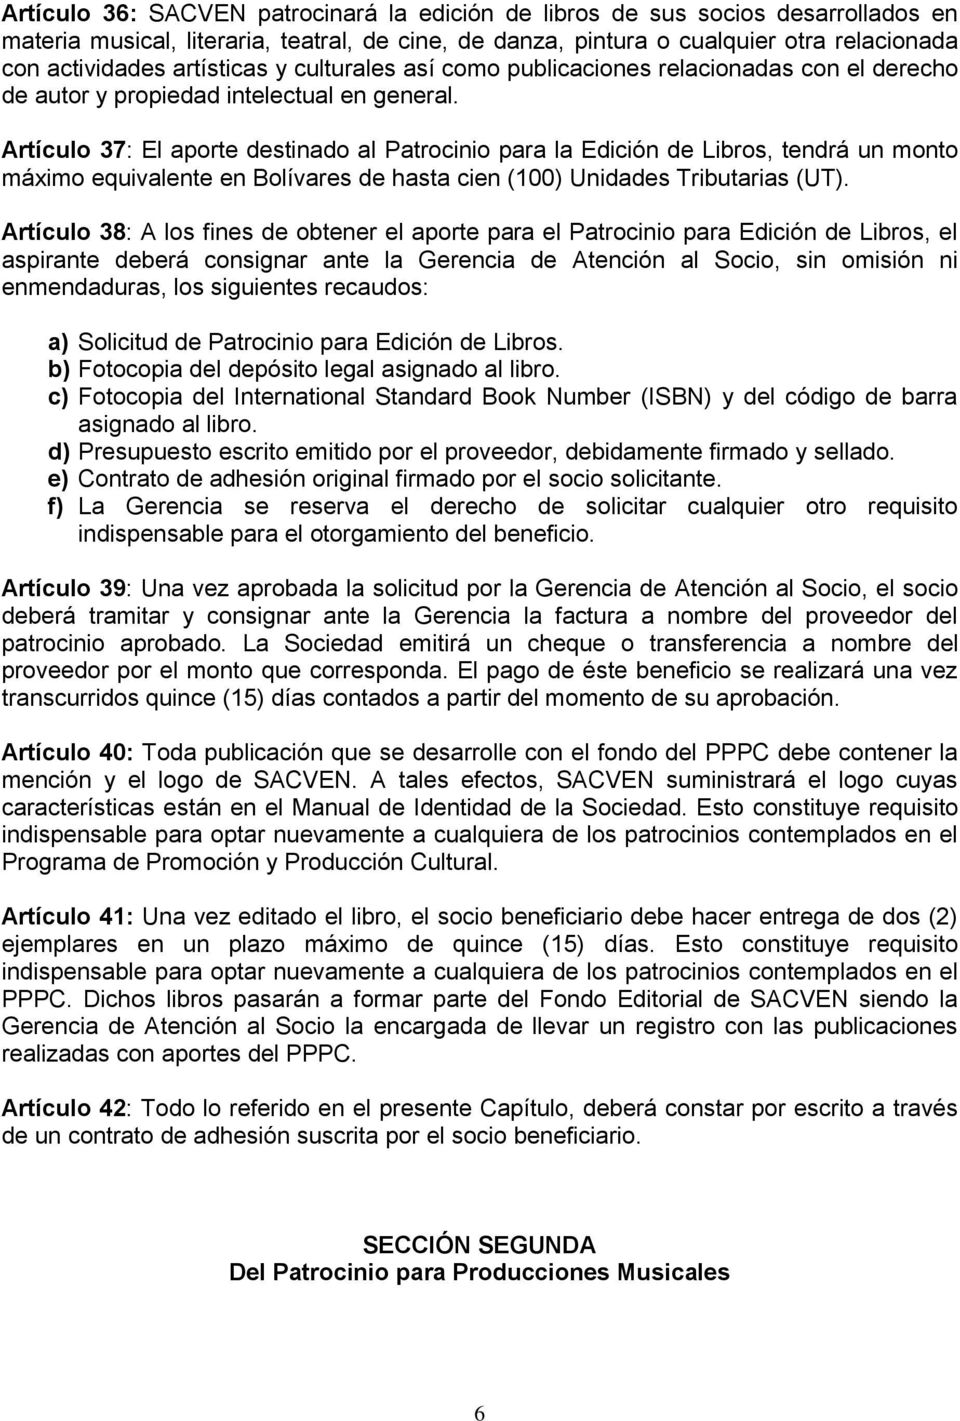 Artículo 37: El aporte destinado al Patrocinio para la Edición de Libros, tendrá un monto máximo equivalente en Bolívares de hasta cien (100) Unidades Tributarias (UT).